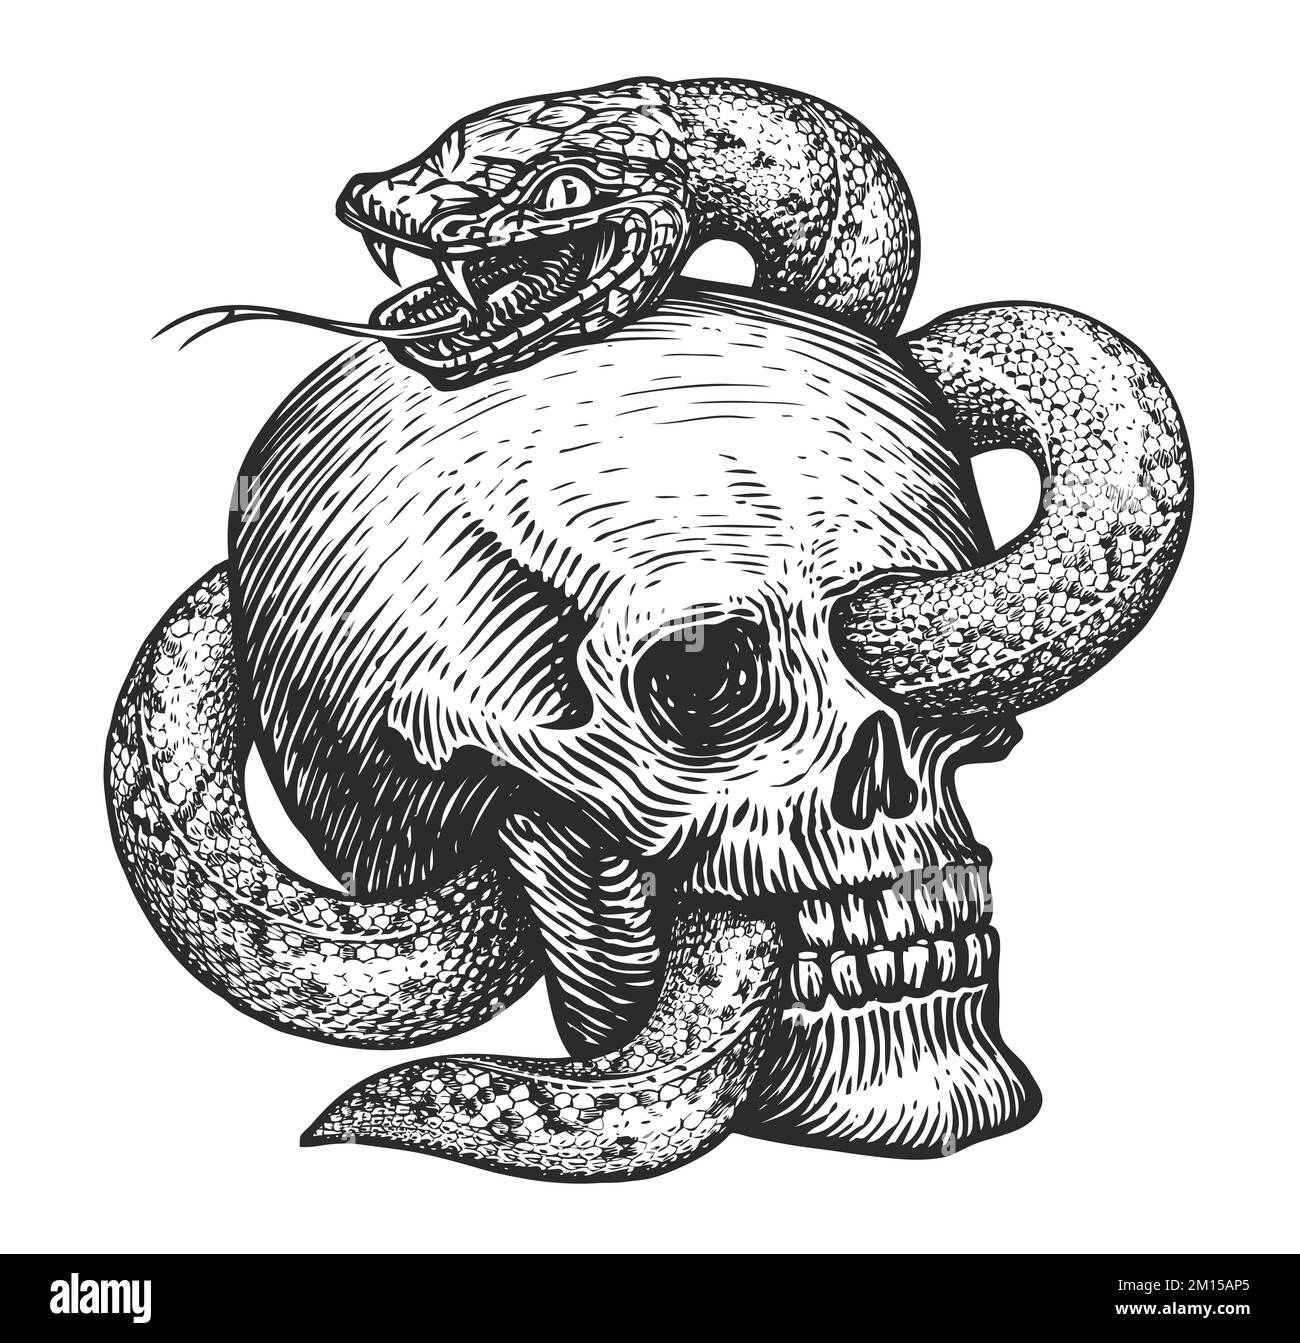 Croquis serpent et crâne humain. Illustration dessinée à la main dans un style de gravure vintage. Tatouage isolé sur fond blanc Banque D'Images